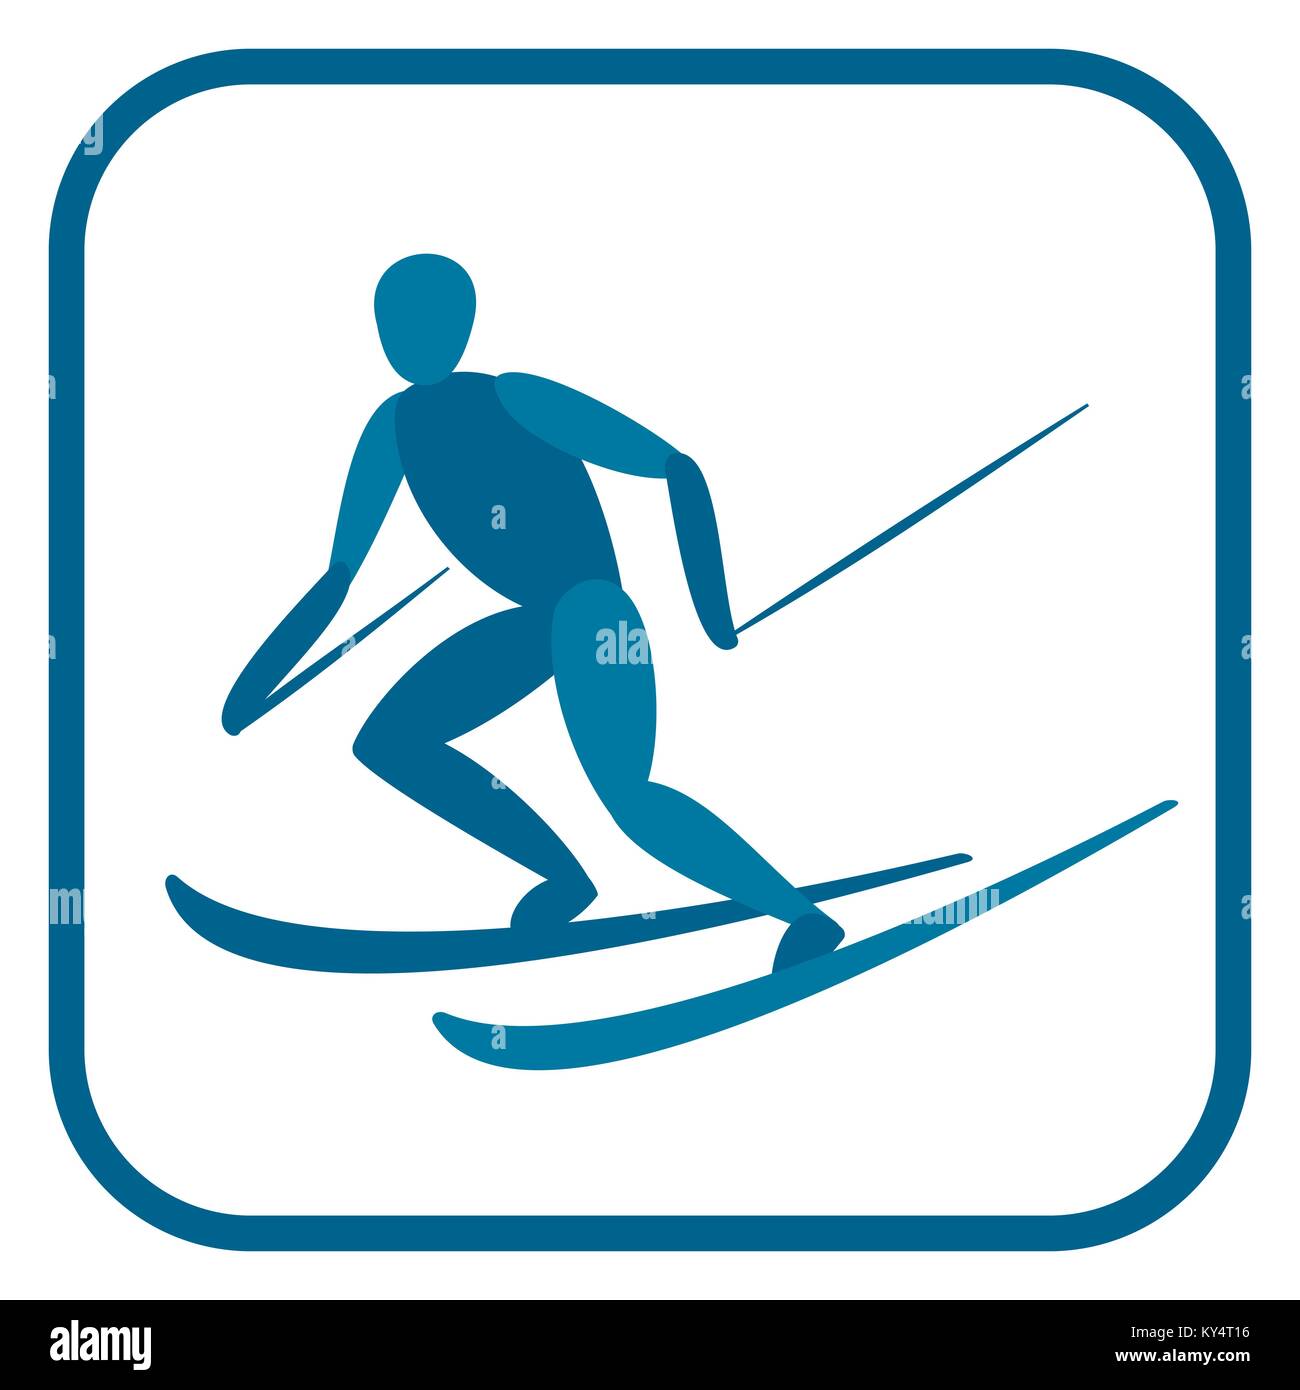 La skieuse alpine emblème. Illustration de Vecteur